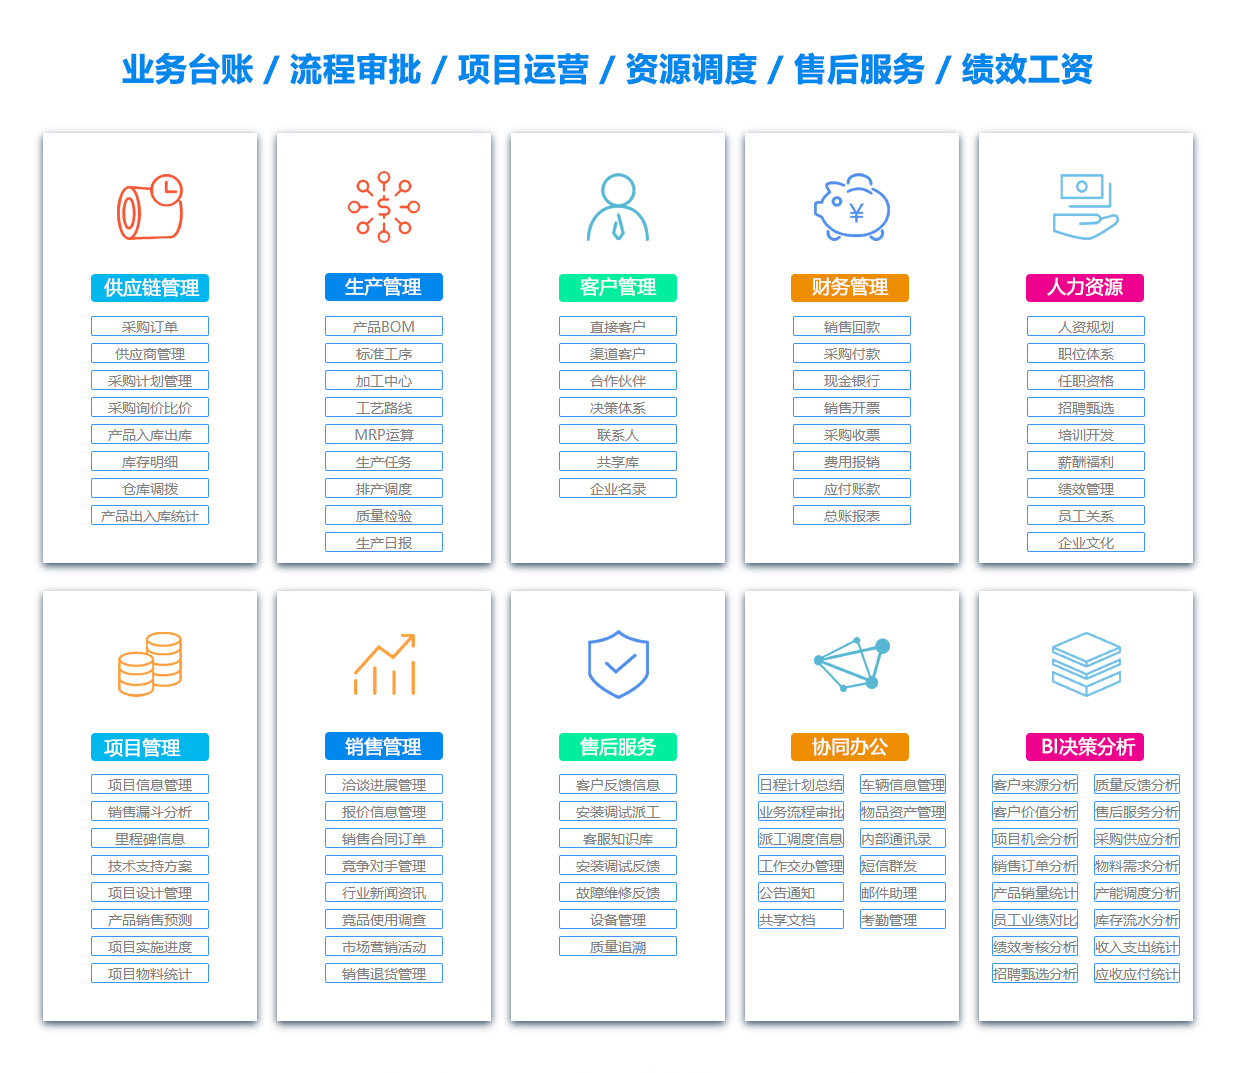 萍乡BOM:物料清单软件